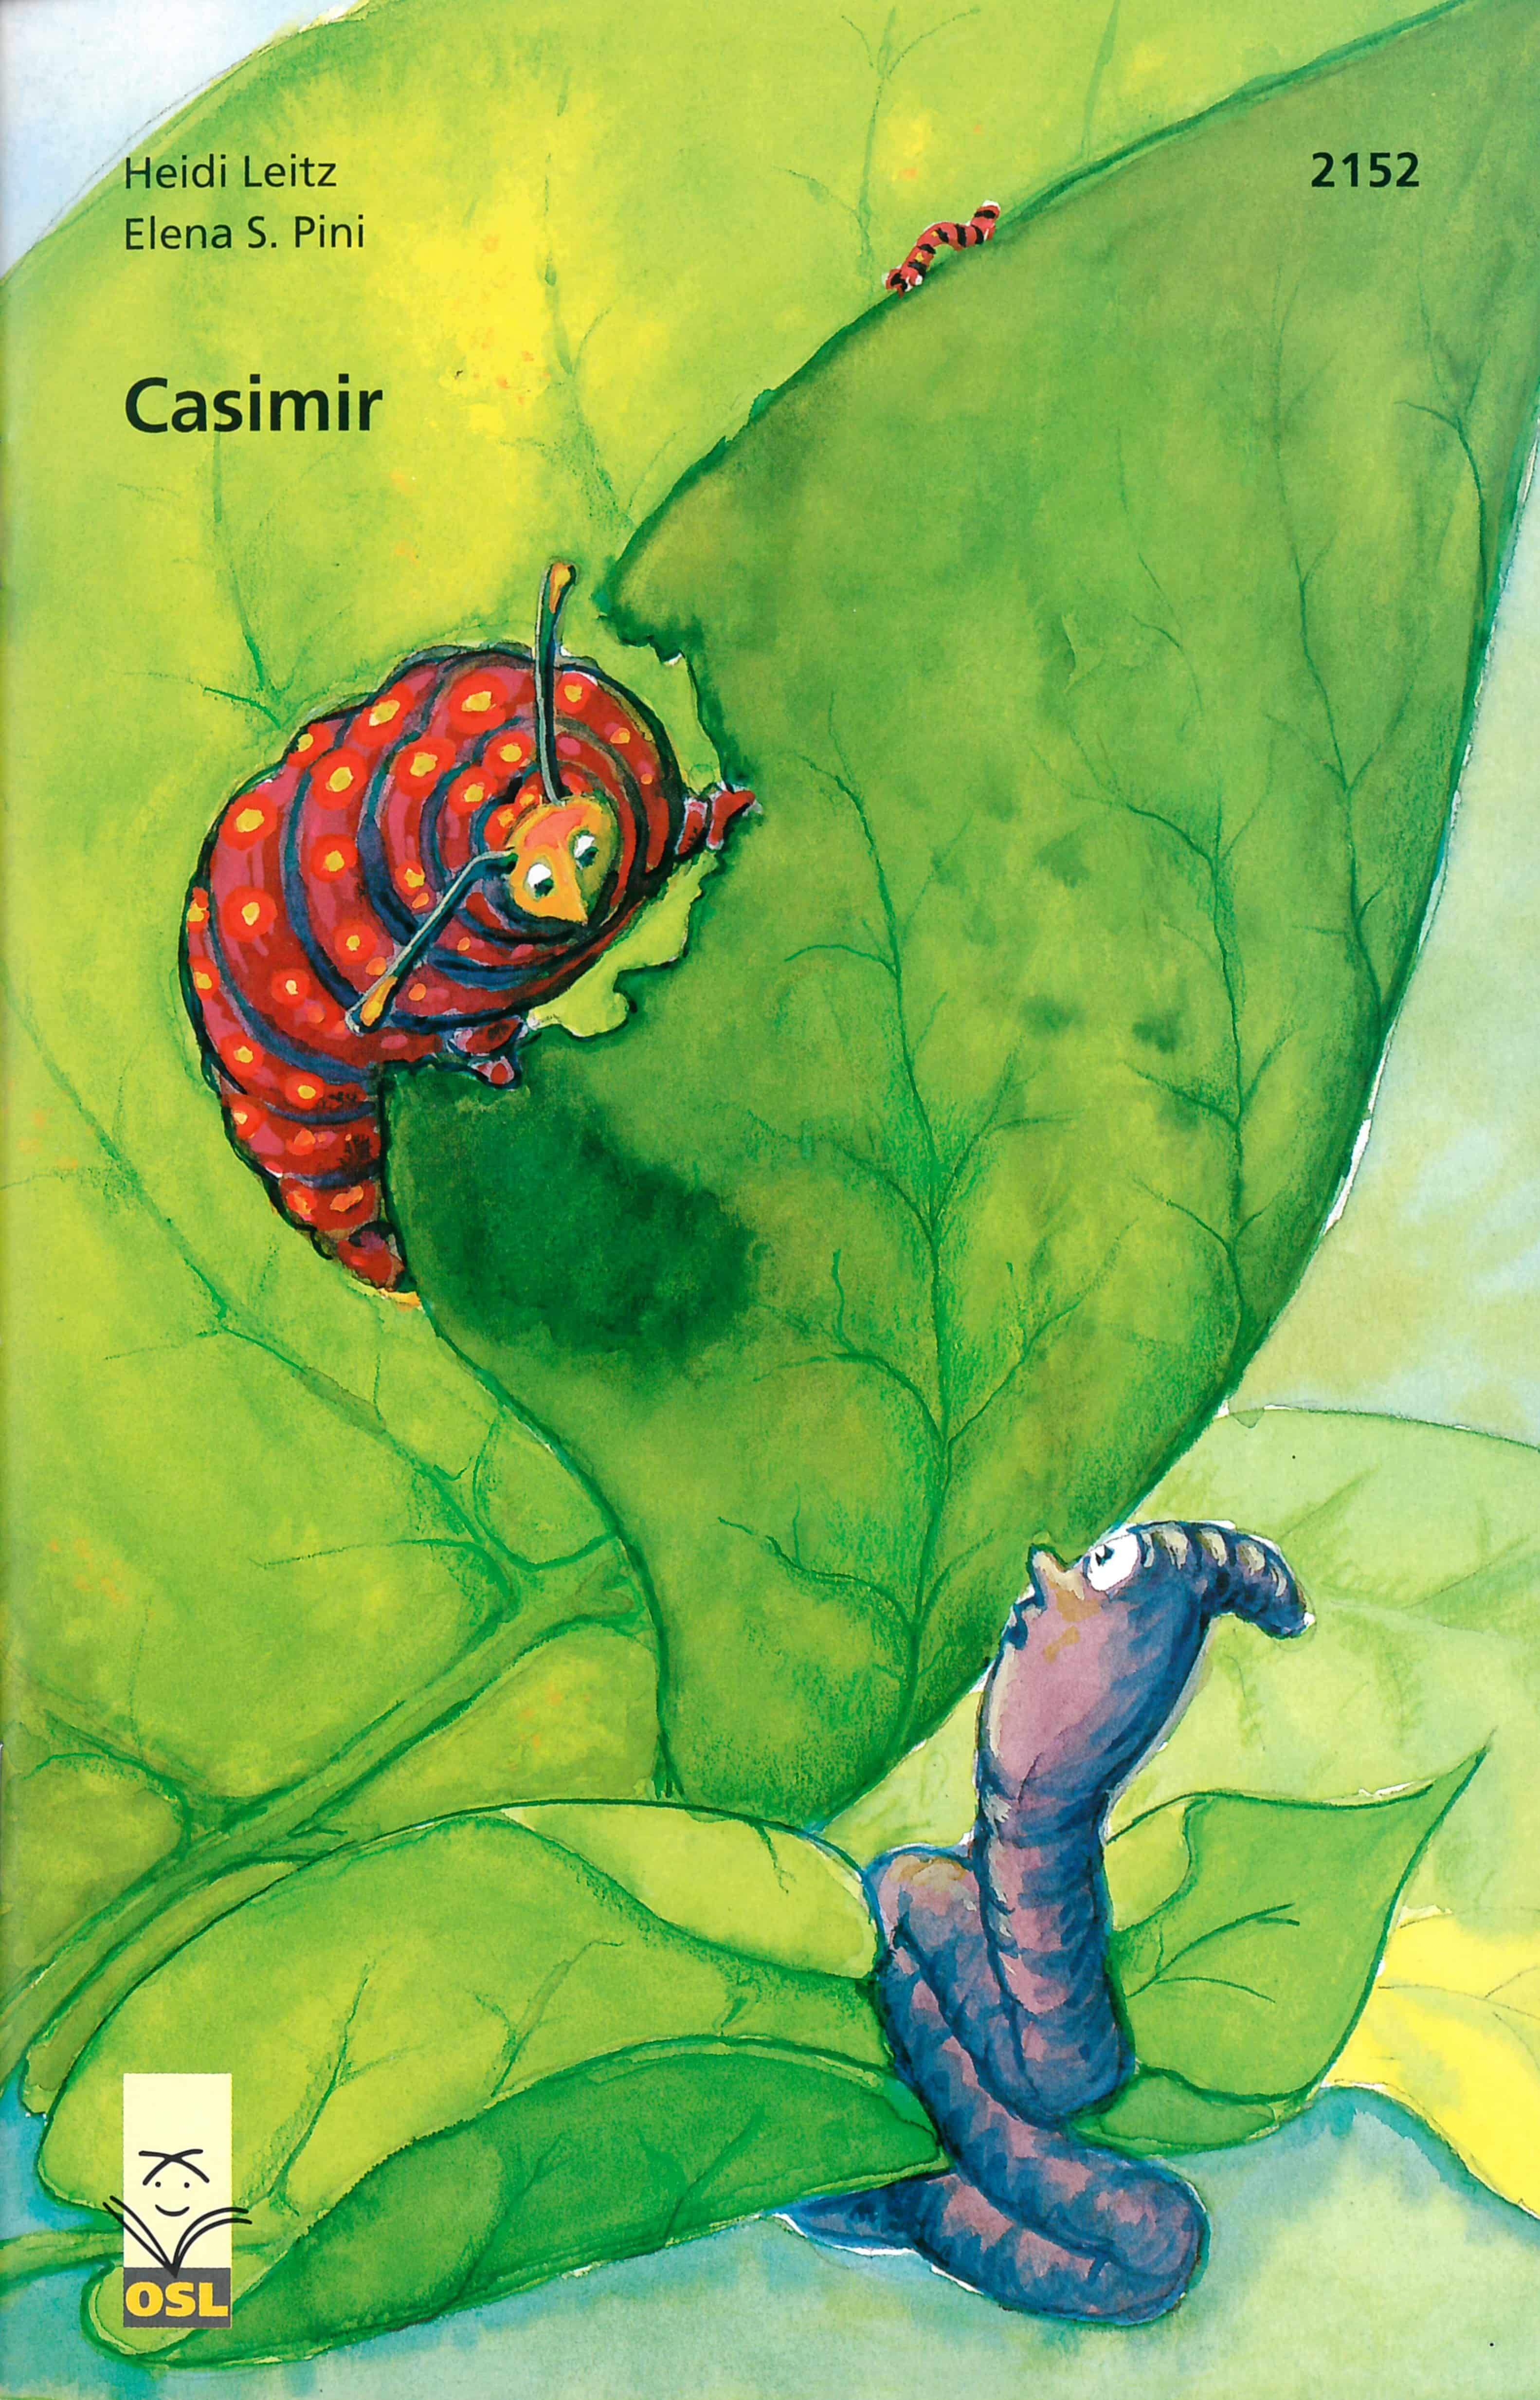 Casimir, ein Kinderbuch von Heidi Leitz, Illustration von Elena S. Pini, SJW Verlag, Wurm, Surmiran